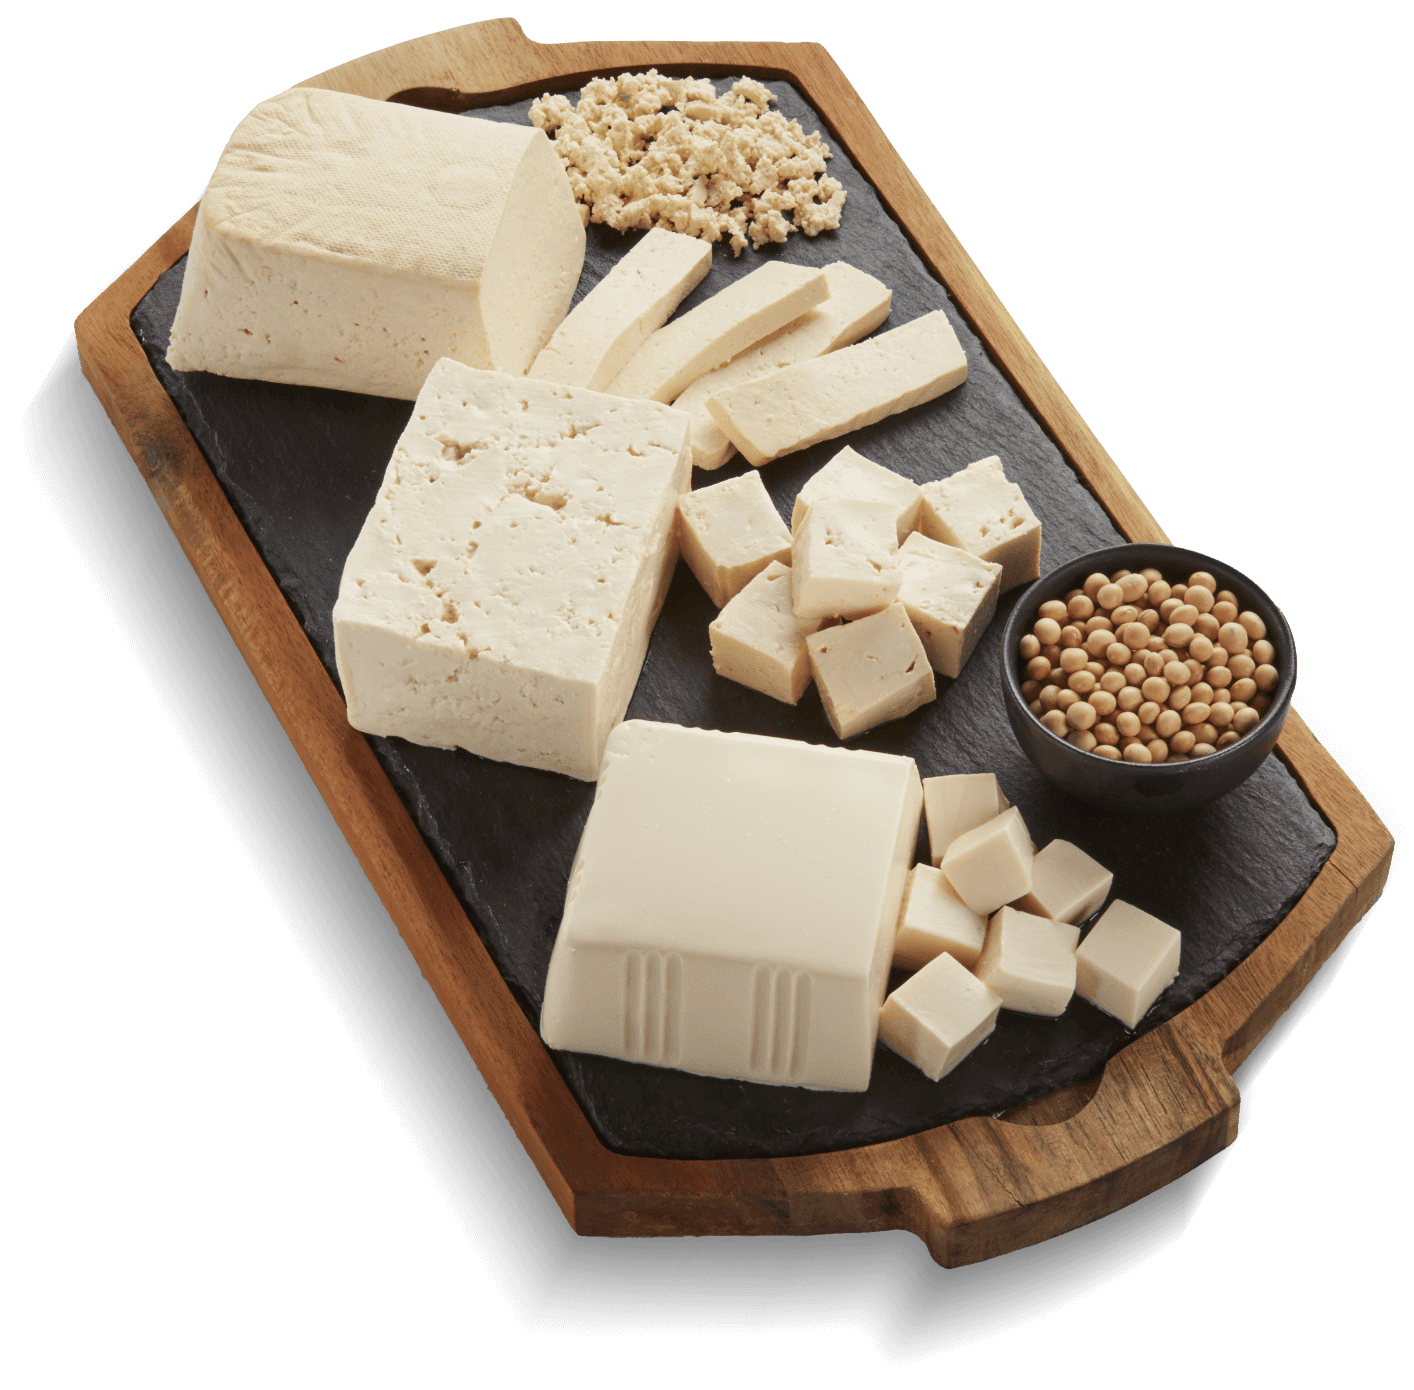 Tofu soyeux biologique dans eau